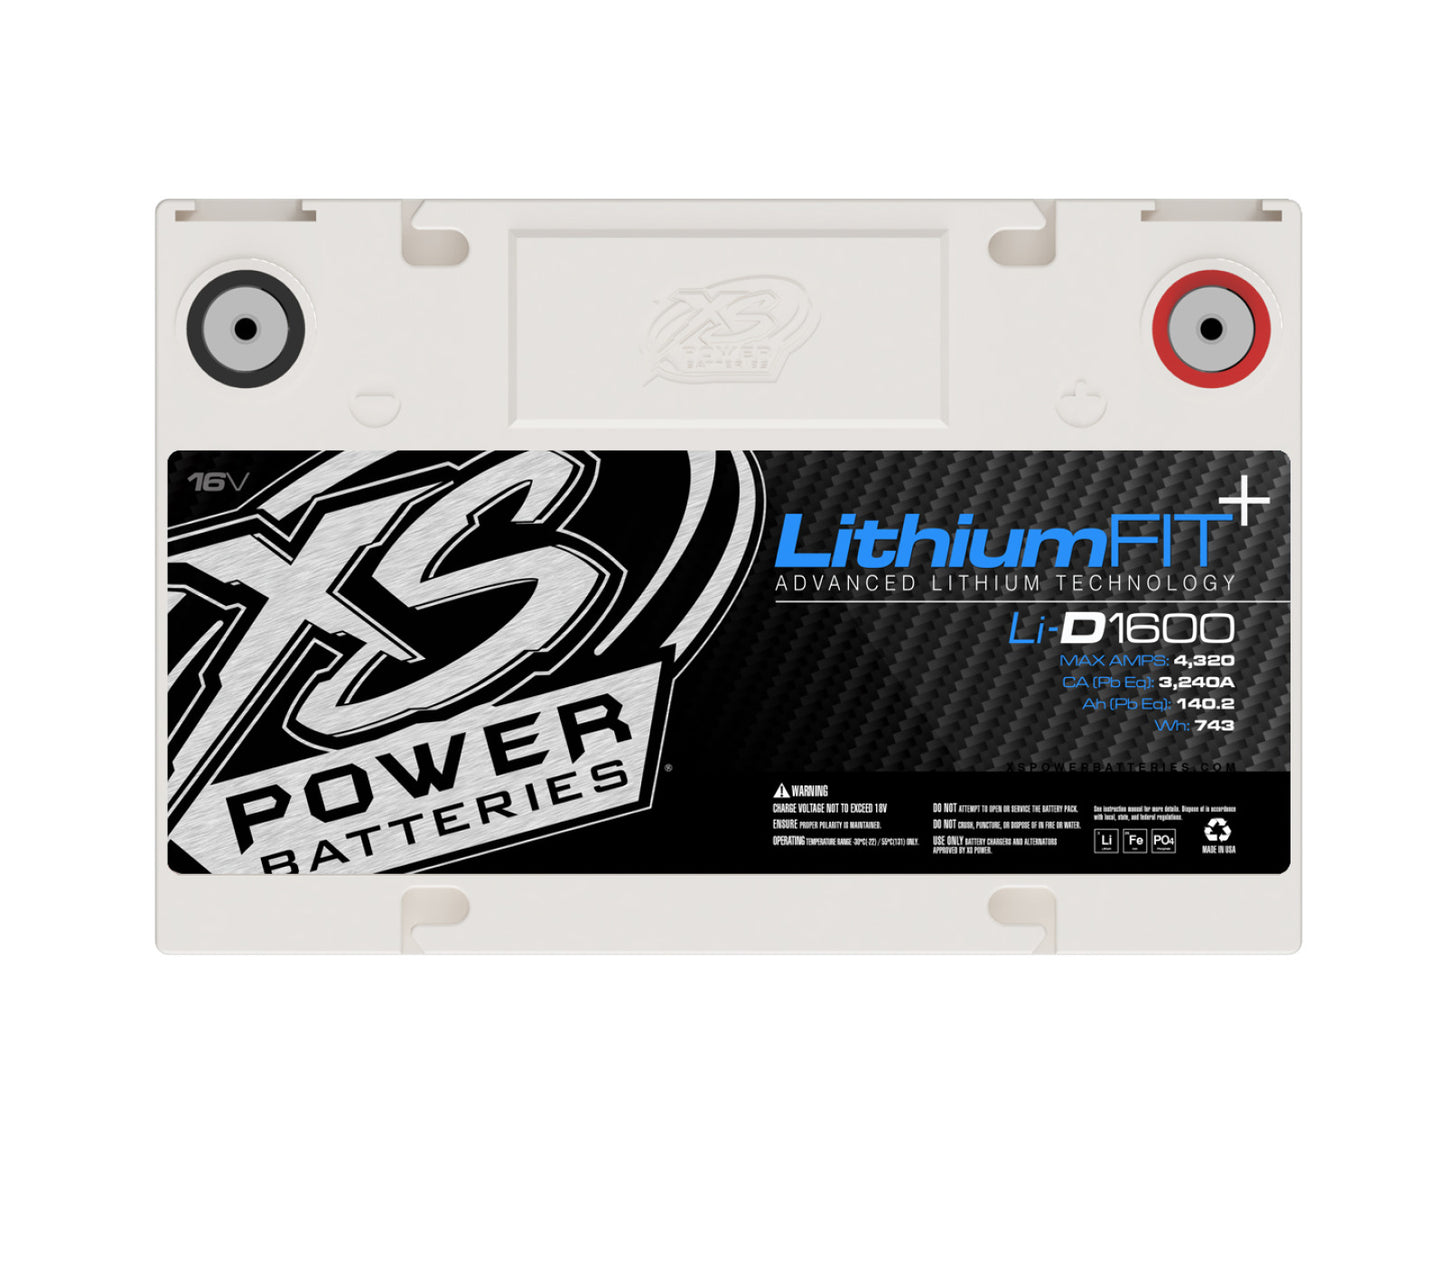 XS Power Batteries Lithium Racing 16V Batteries - Stud Adaptors/Terminal Bolts Included 4320 Max Amps Li-D1600CK